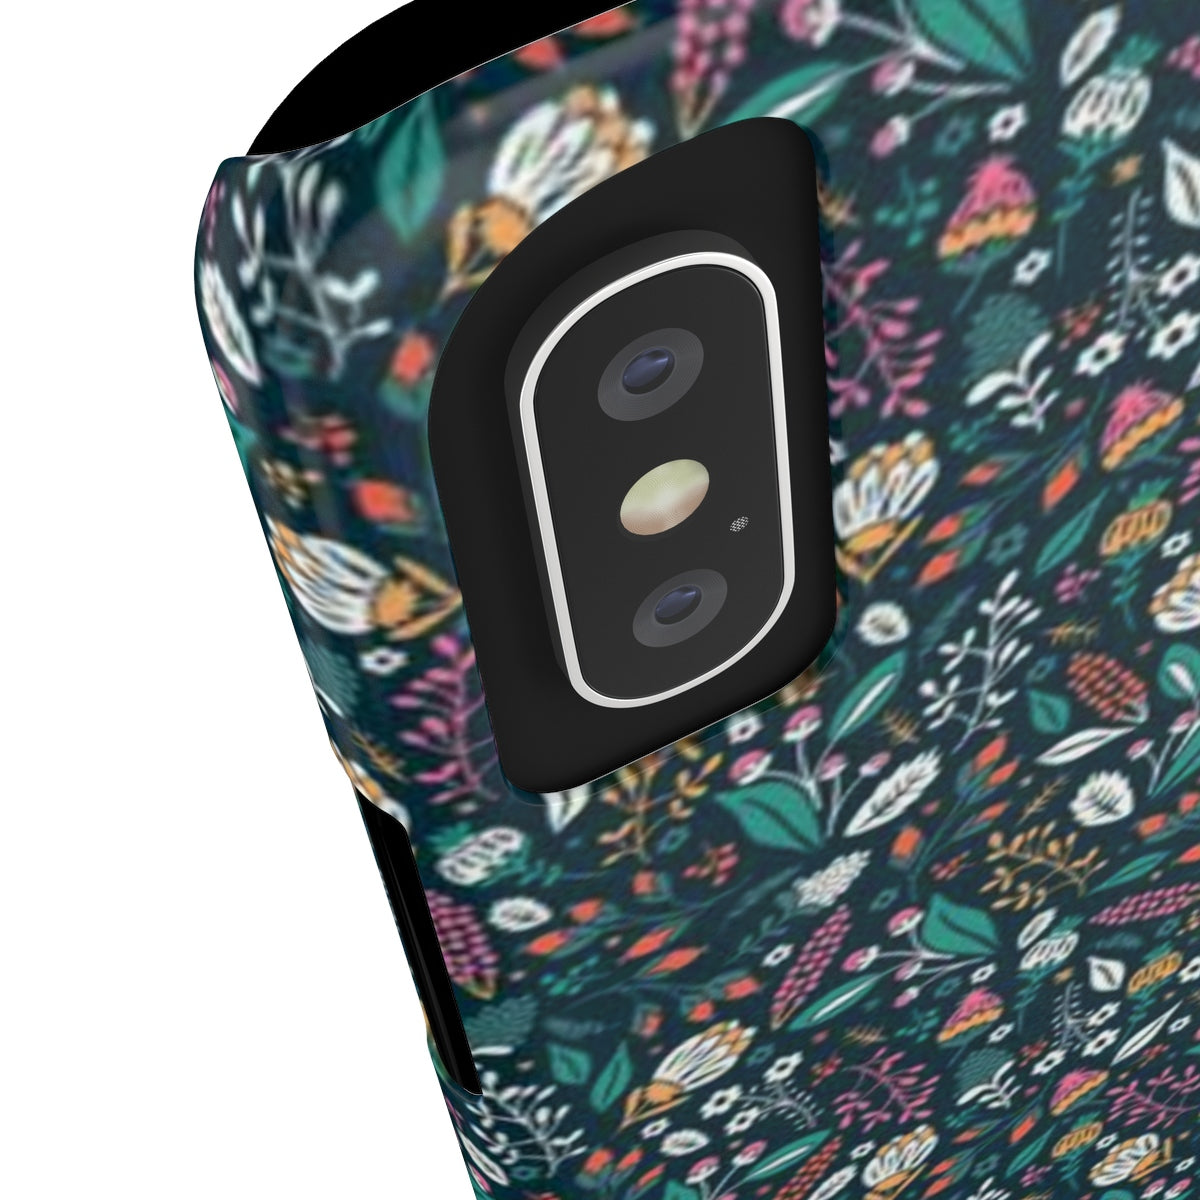 Flower Case Mate Slim Phone Cases-Phone Case-PureDesignTees